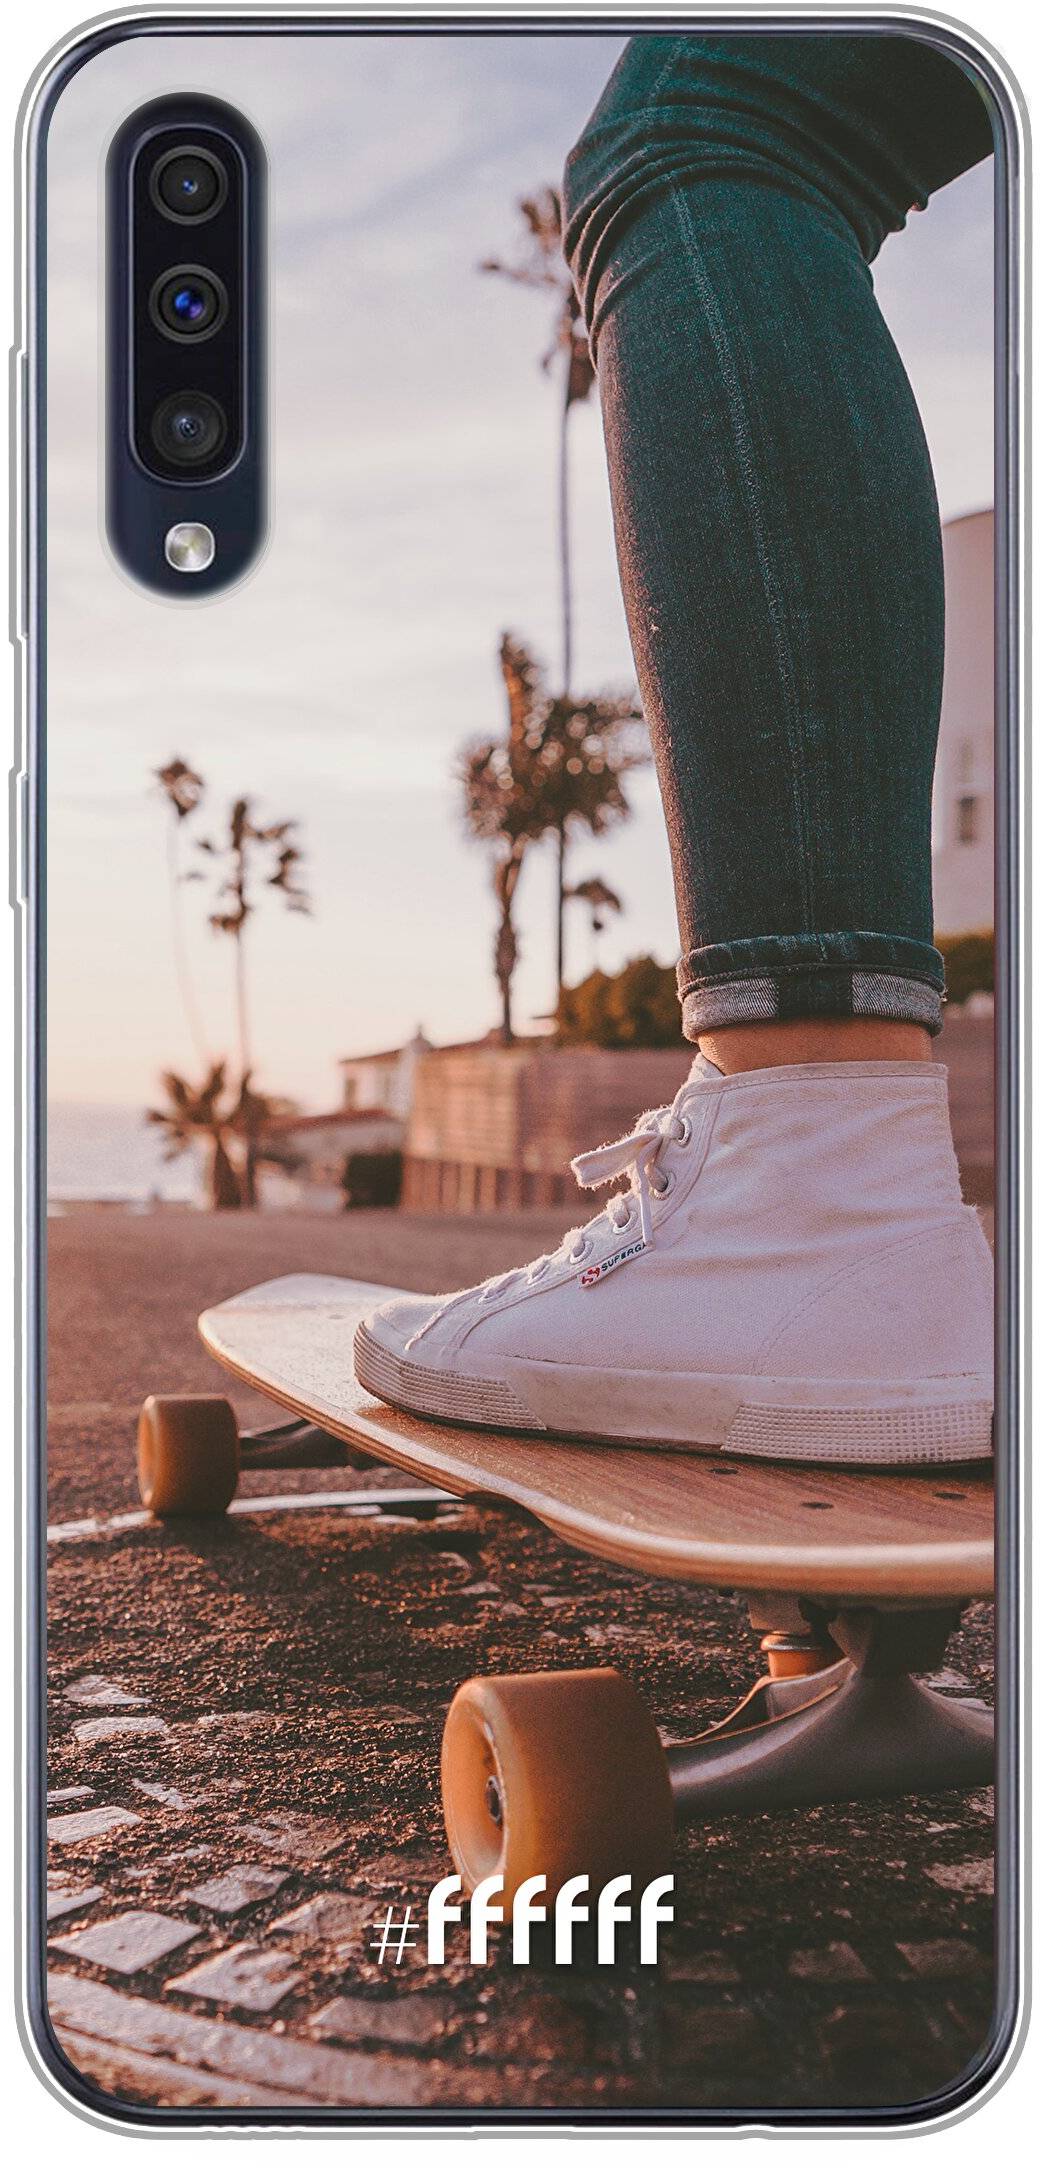 Skateboarding Galaxy A50